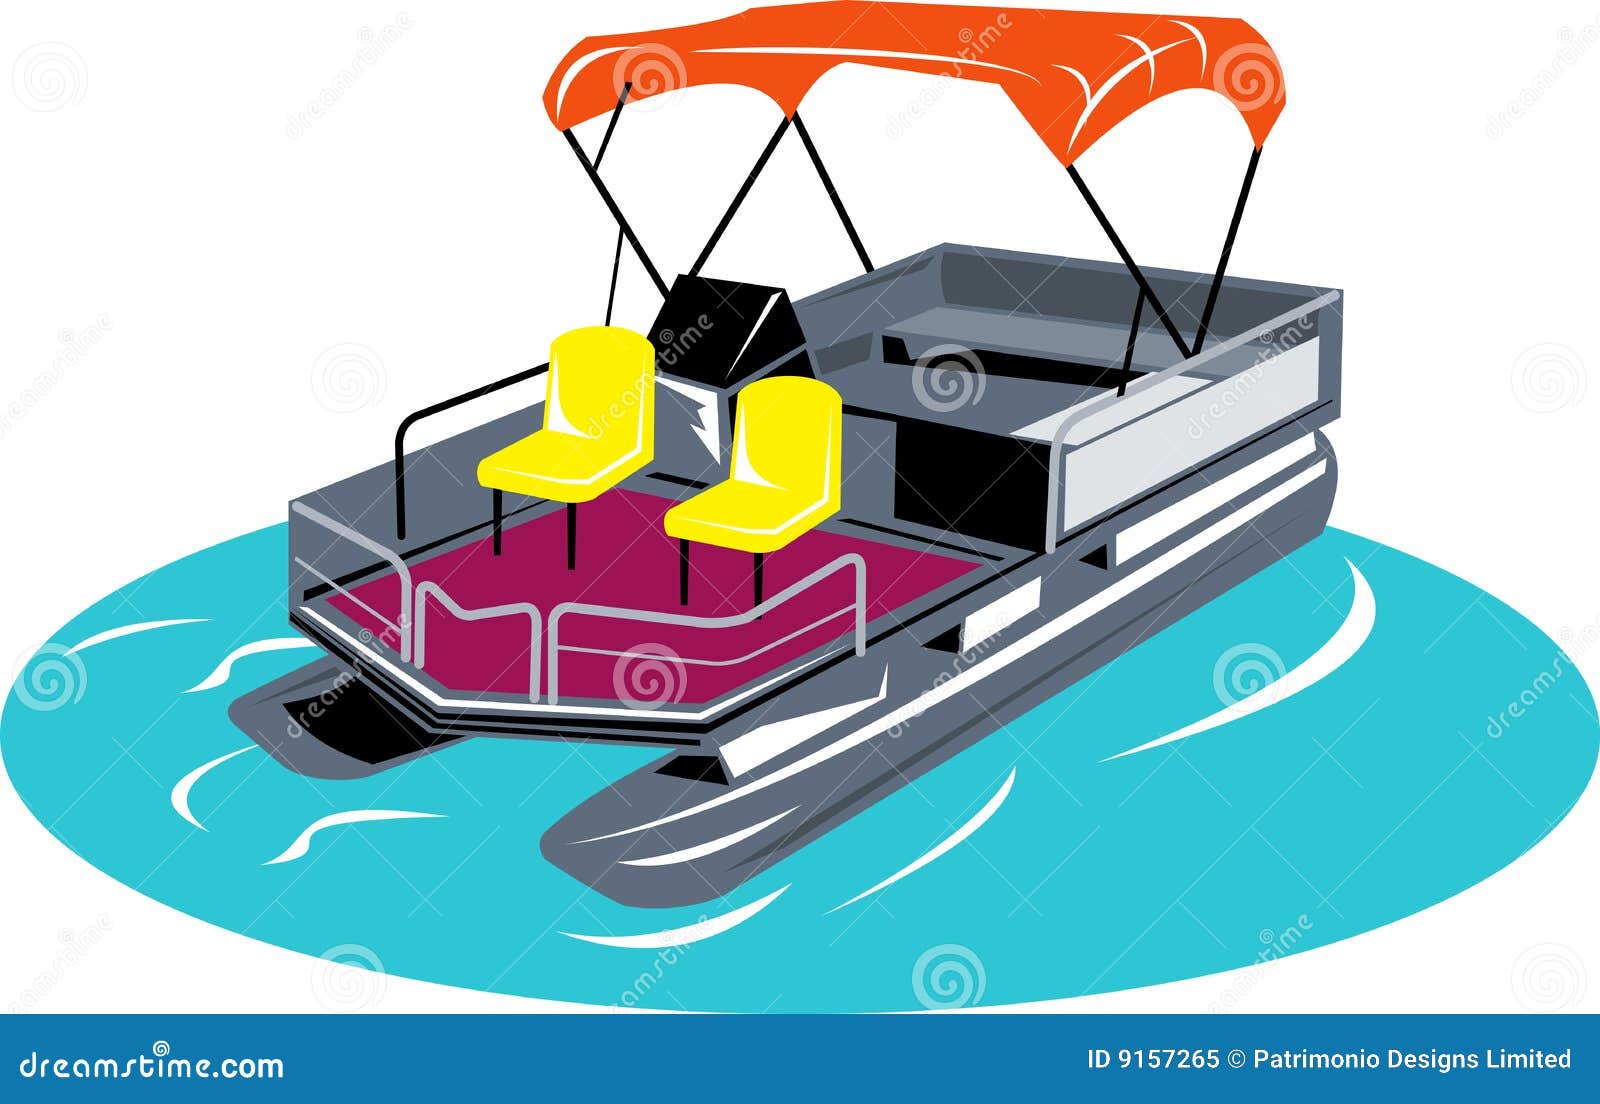 Pontoon Boat Royalty Free Stock Photo - Image: 9157265